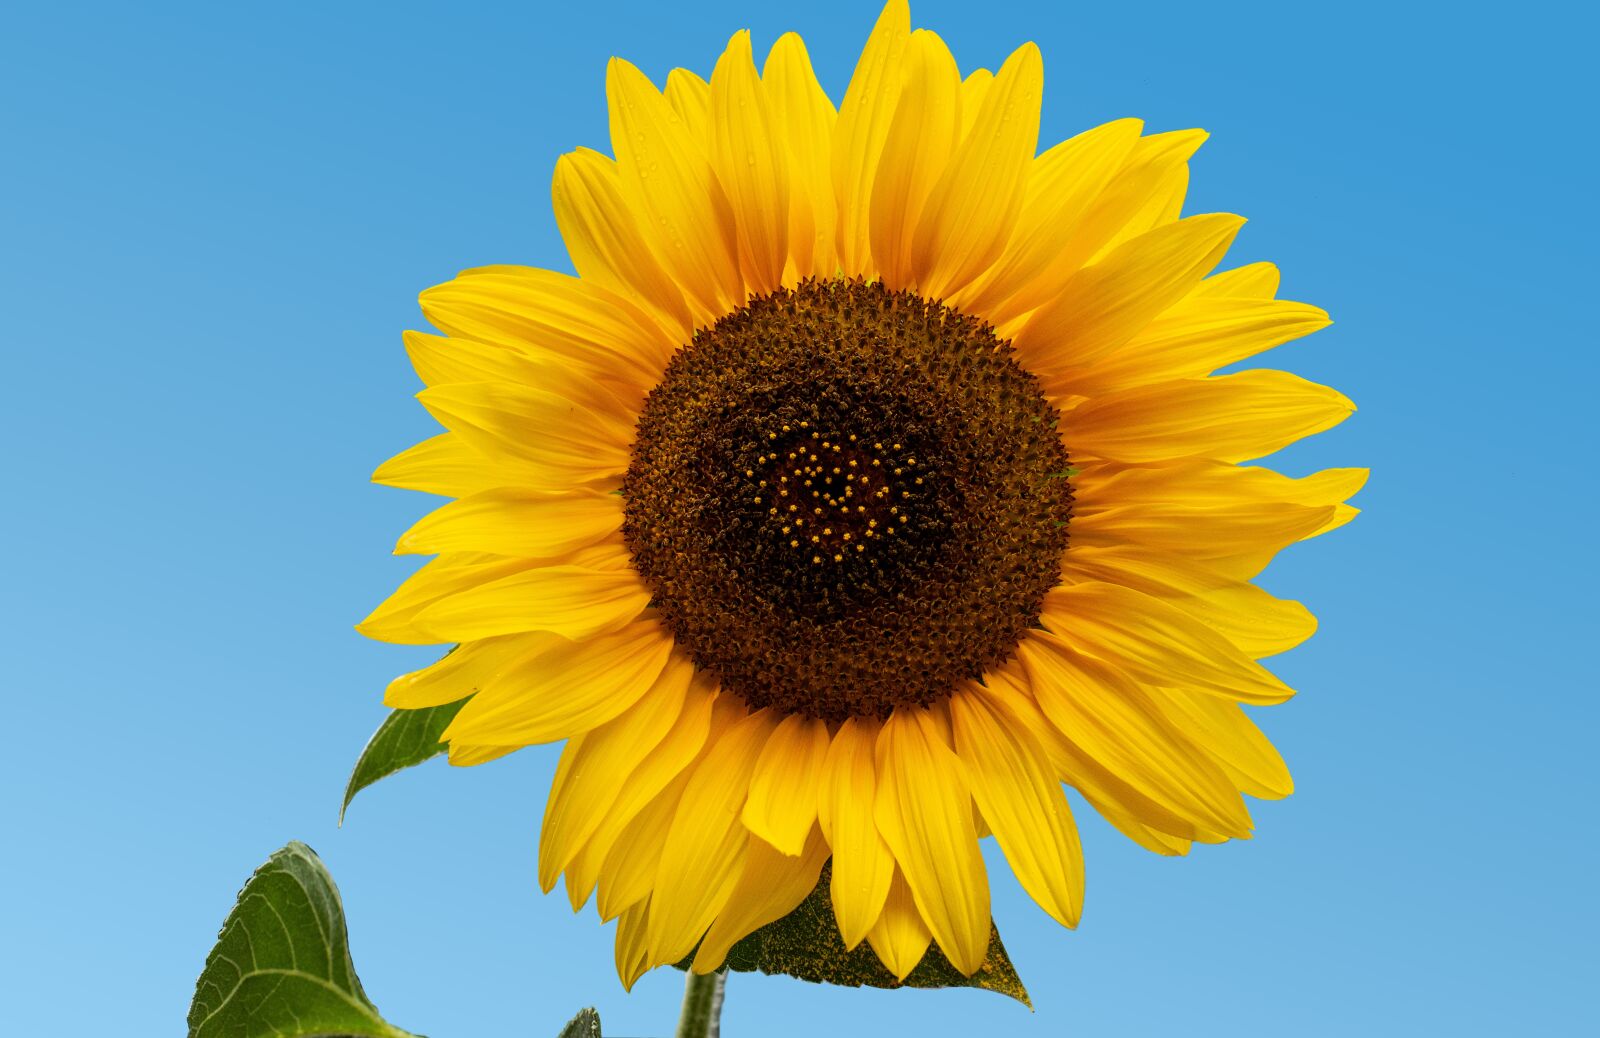 Nikon D610 sample photo. Sunflower, heart, sky photography